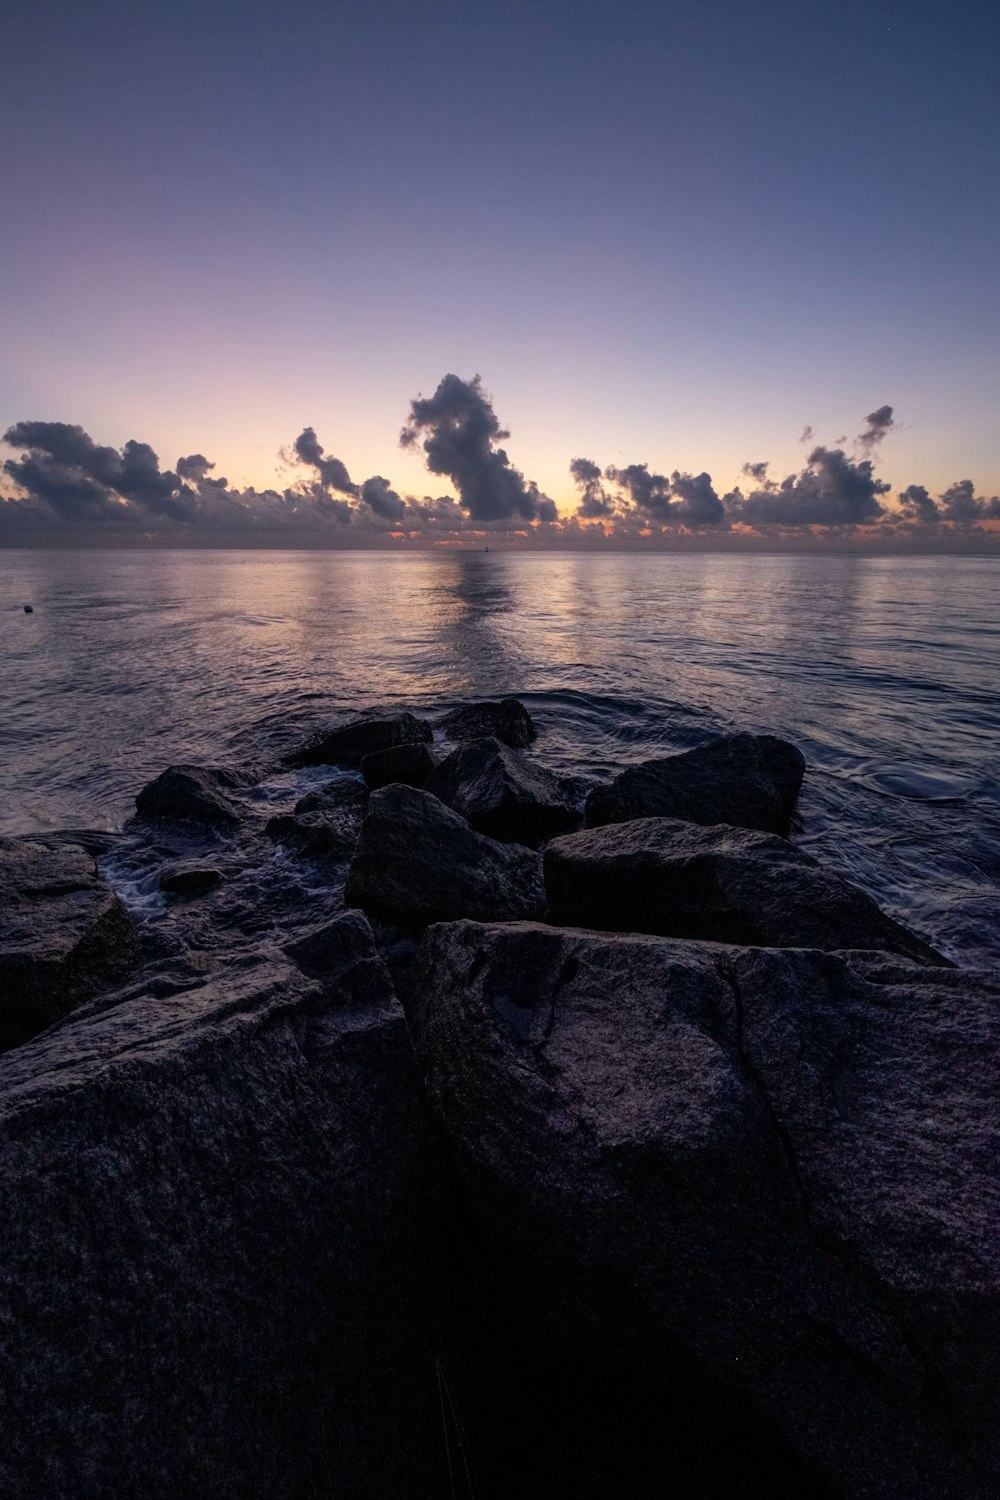 Graue Felsen in der Nähe von Gewässern während des Sonnenuntergangs